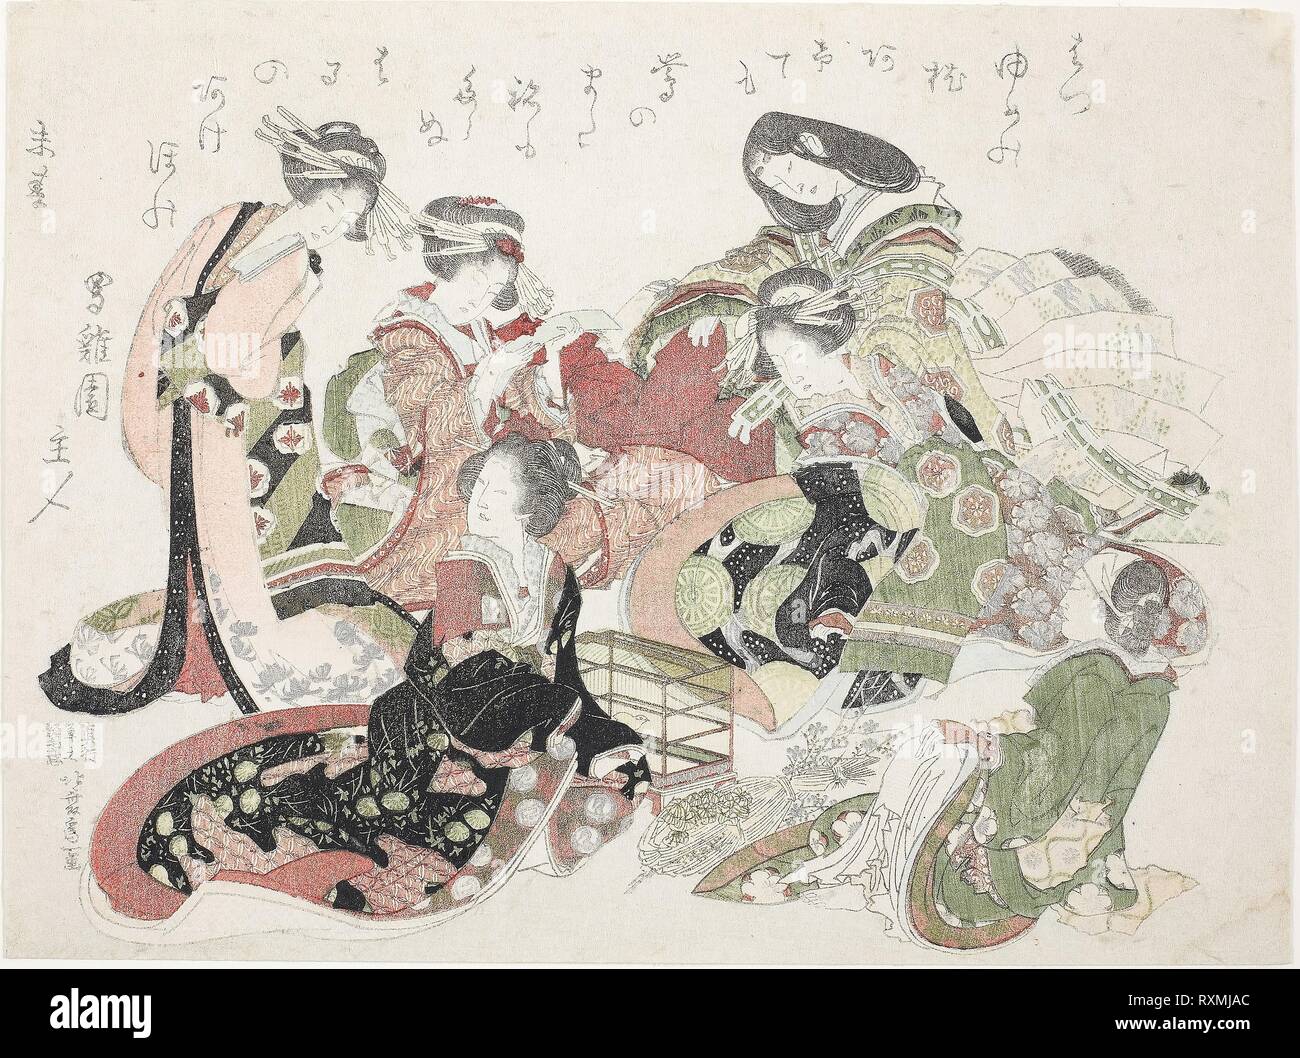 Sechs Frauen um ein Vogel Käfig sitzt. Katsushika Hokusai?? ??; Japanisch, 1760-1849. Datum: 1823. Abmessungen: 20,4 x 27,2 cm. Farbe holzschnitt; surimono. Herkunft: Japan. Museum: Das Chicago Art Institute. Stockfoto